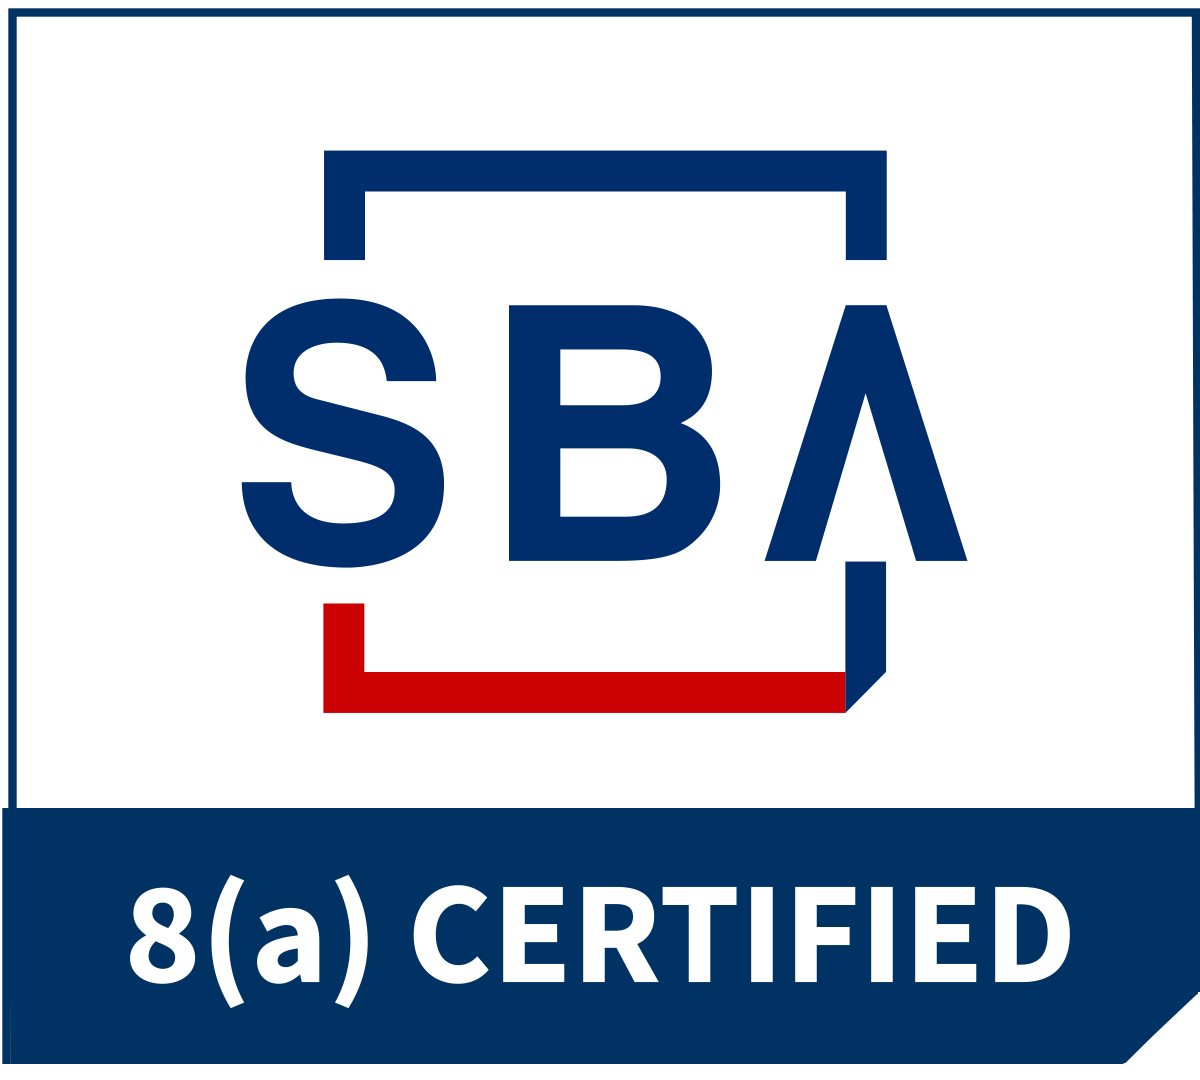 8a Certified - HelpForce, LLC